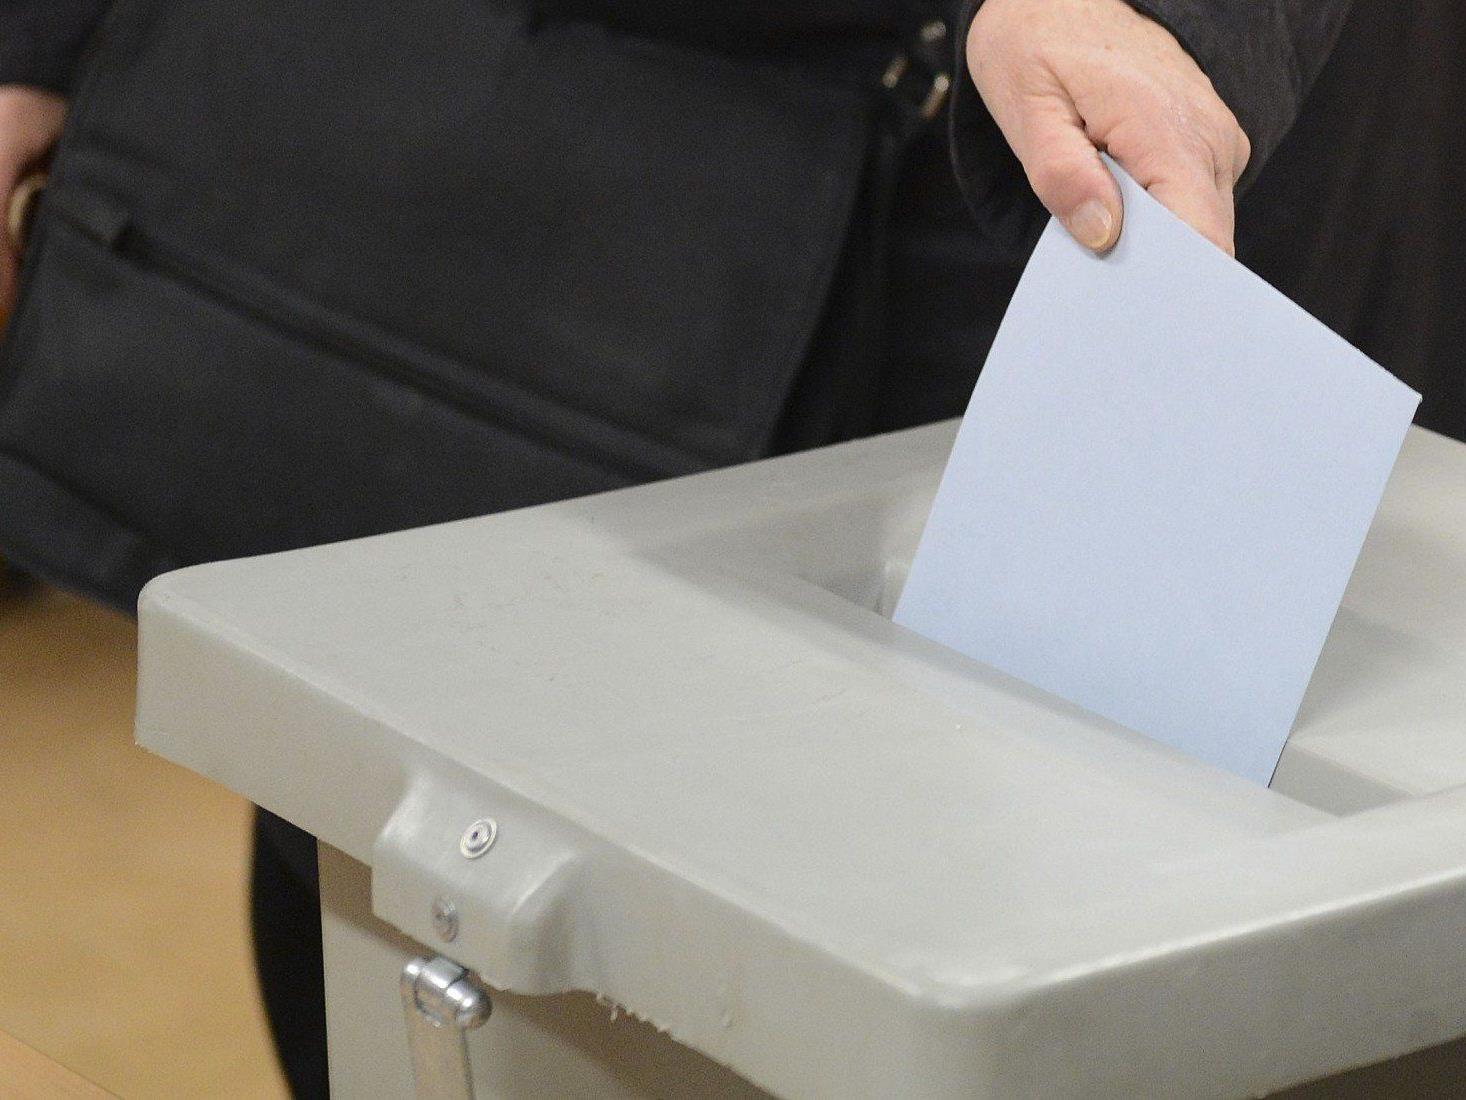 Ab sofort können die Wahlkarten für die Landtagswahlen in Tirol und Salzburg beantragt werden.